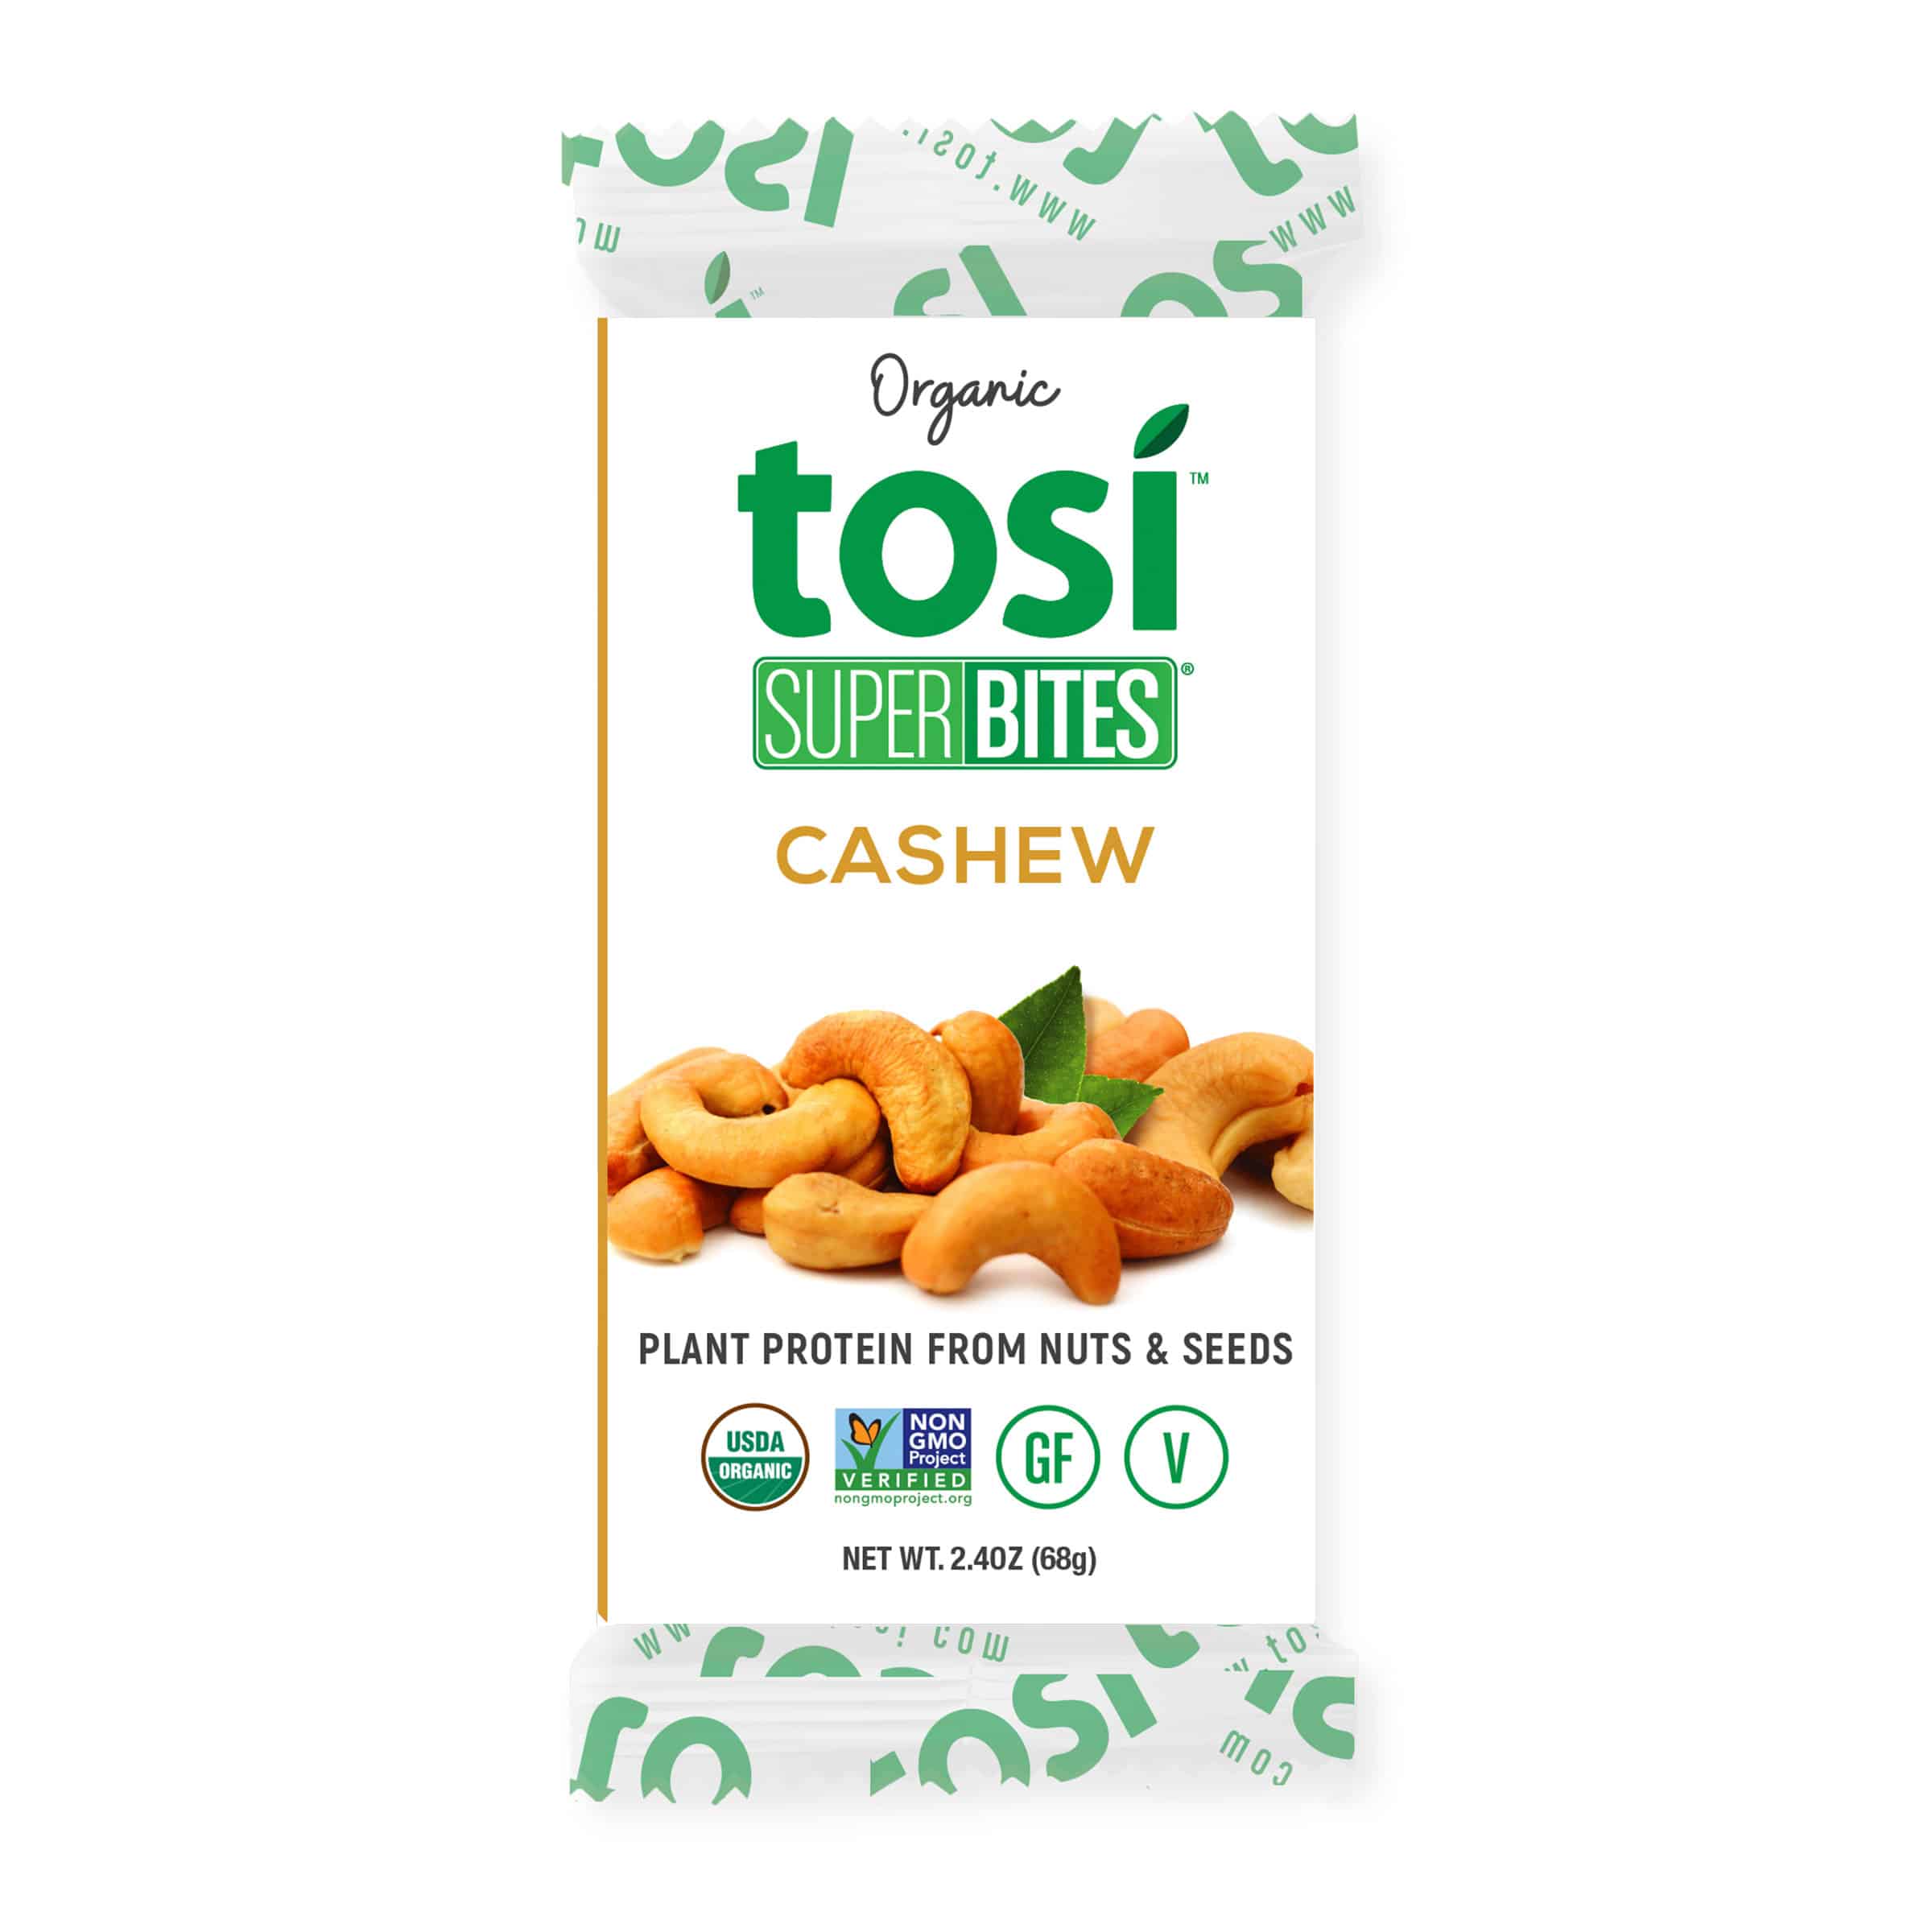 Tosi SuperBites Cashew 4 innerpacks per case 28.8 oz